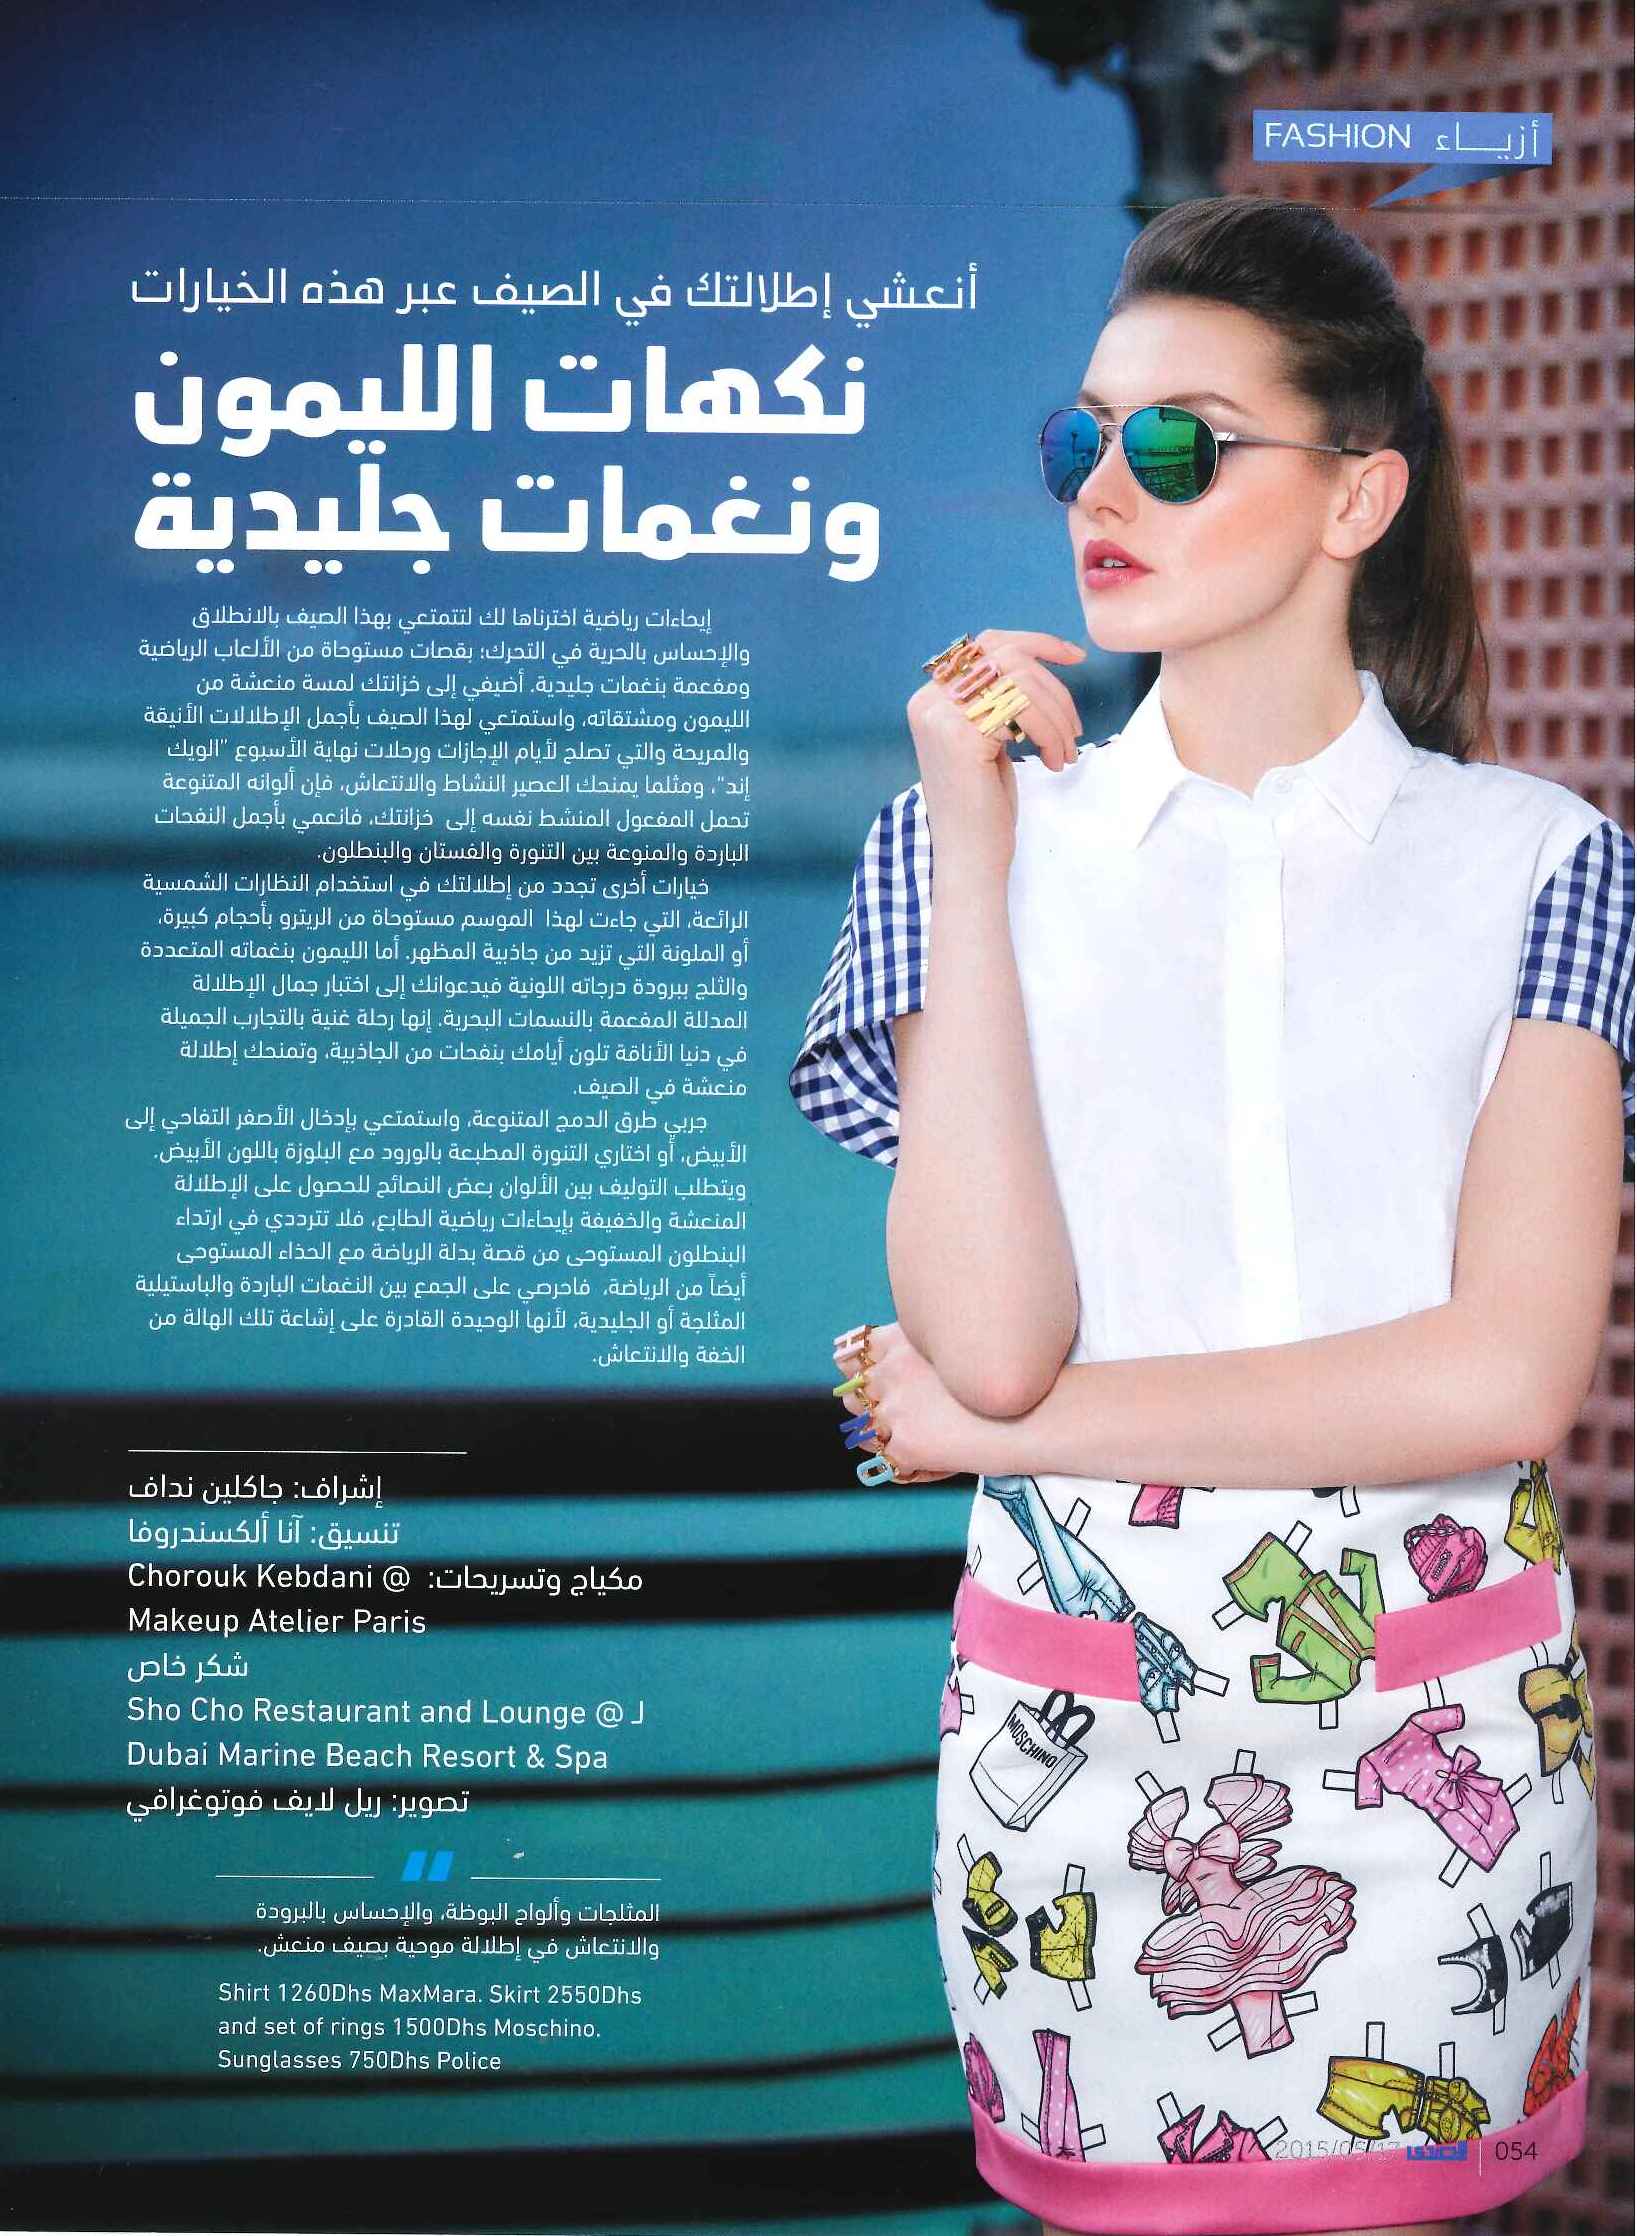 FLC Models & Talents - Catalogue Shoots - Al Sada - Marina May 15